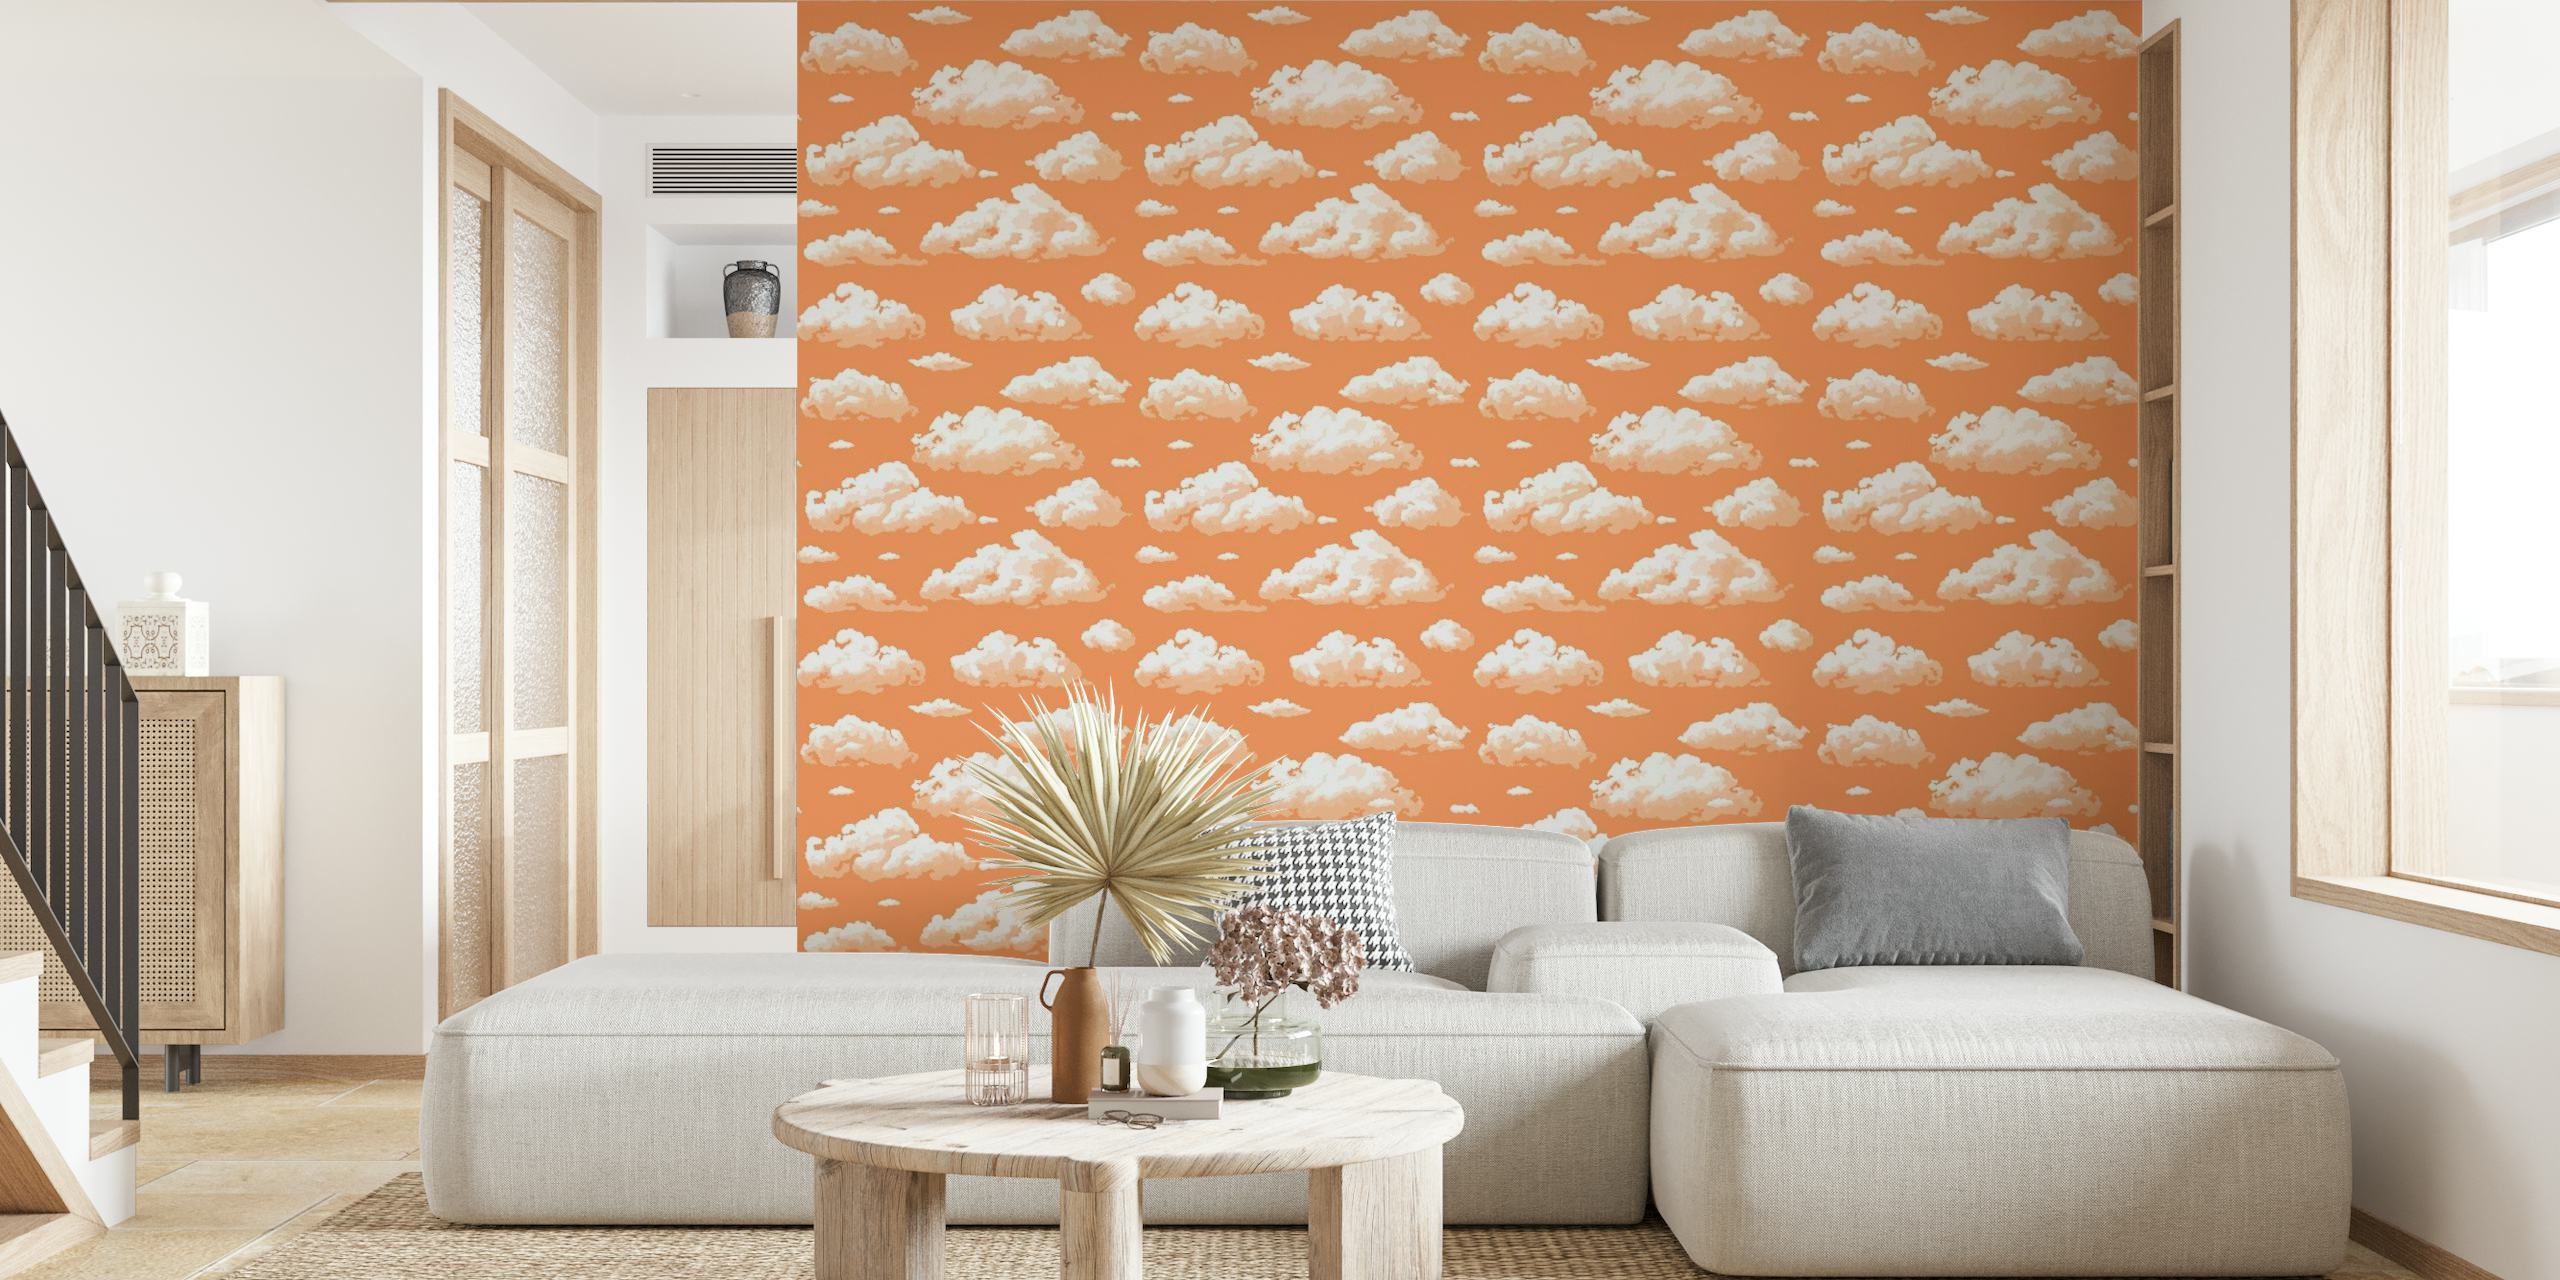 Herhaalde donzige witte wolken op een warme perzikkleurige muurschildering als achtergrond